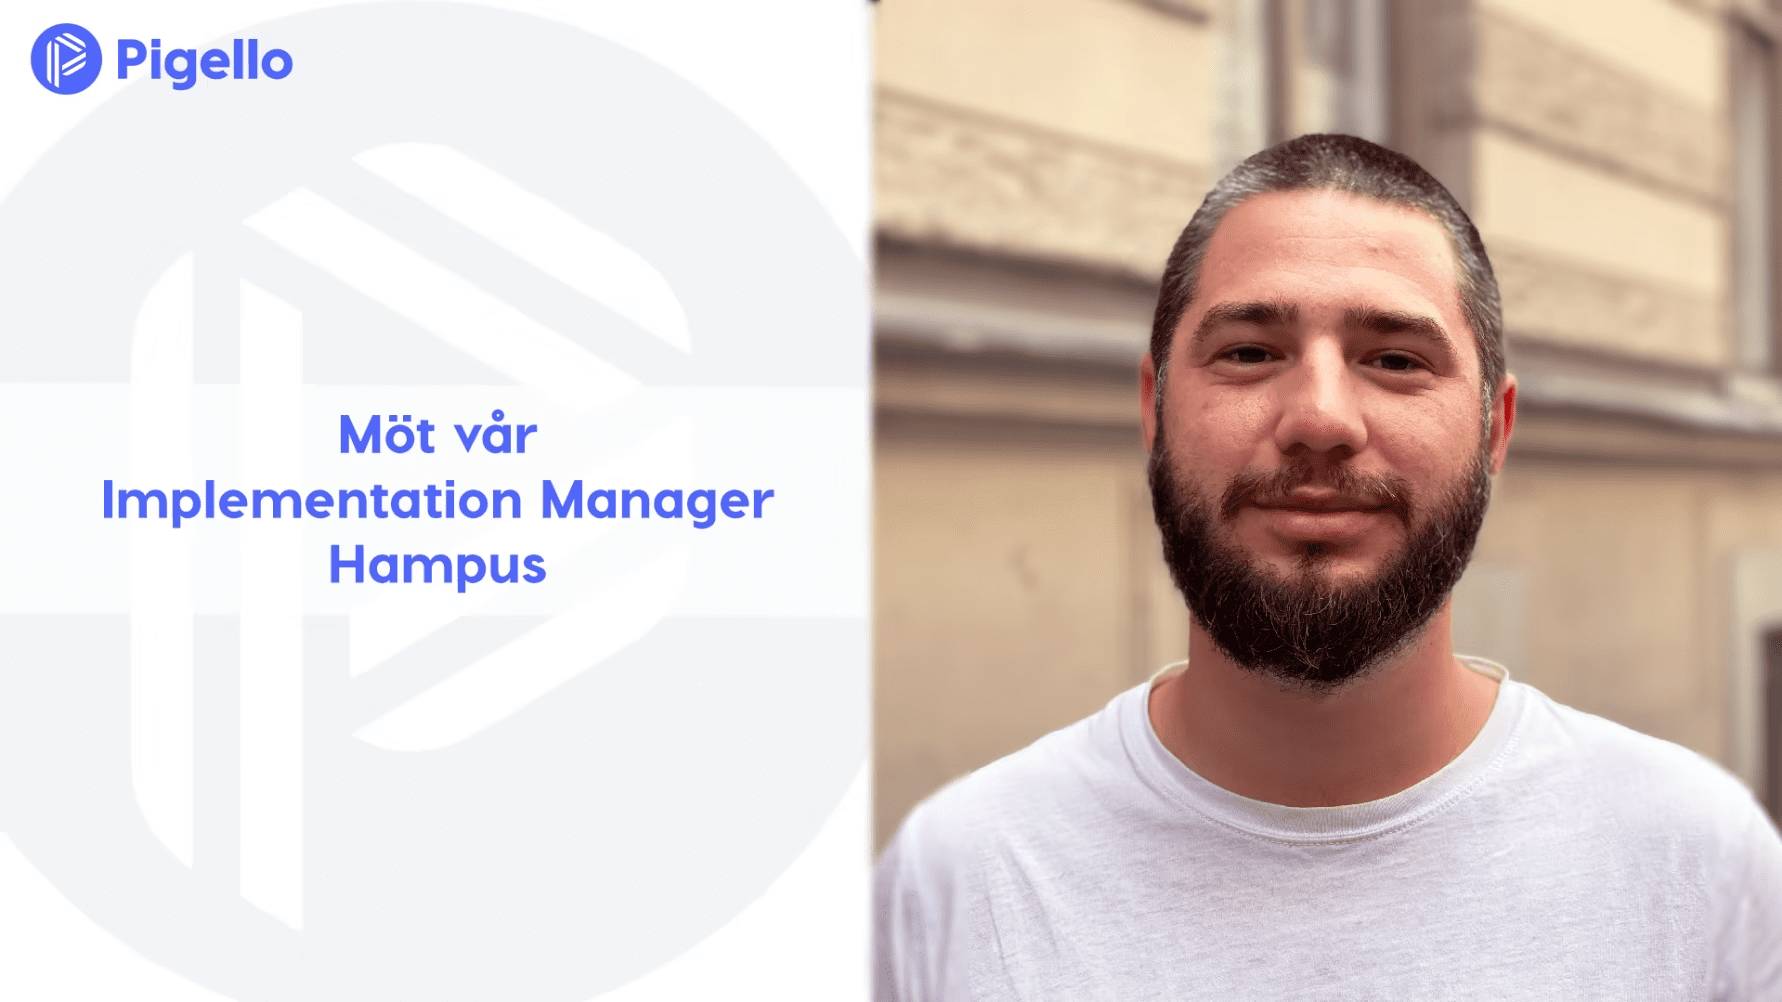 Pigello välkomnar nu Hampus som Implementation Manager